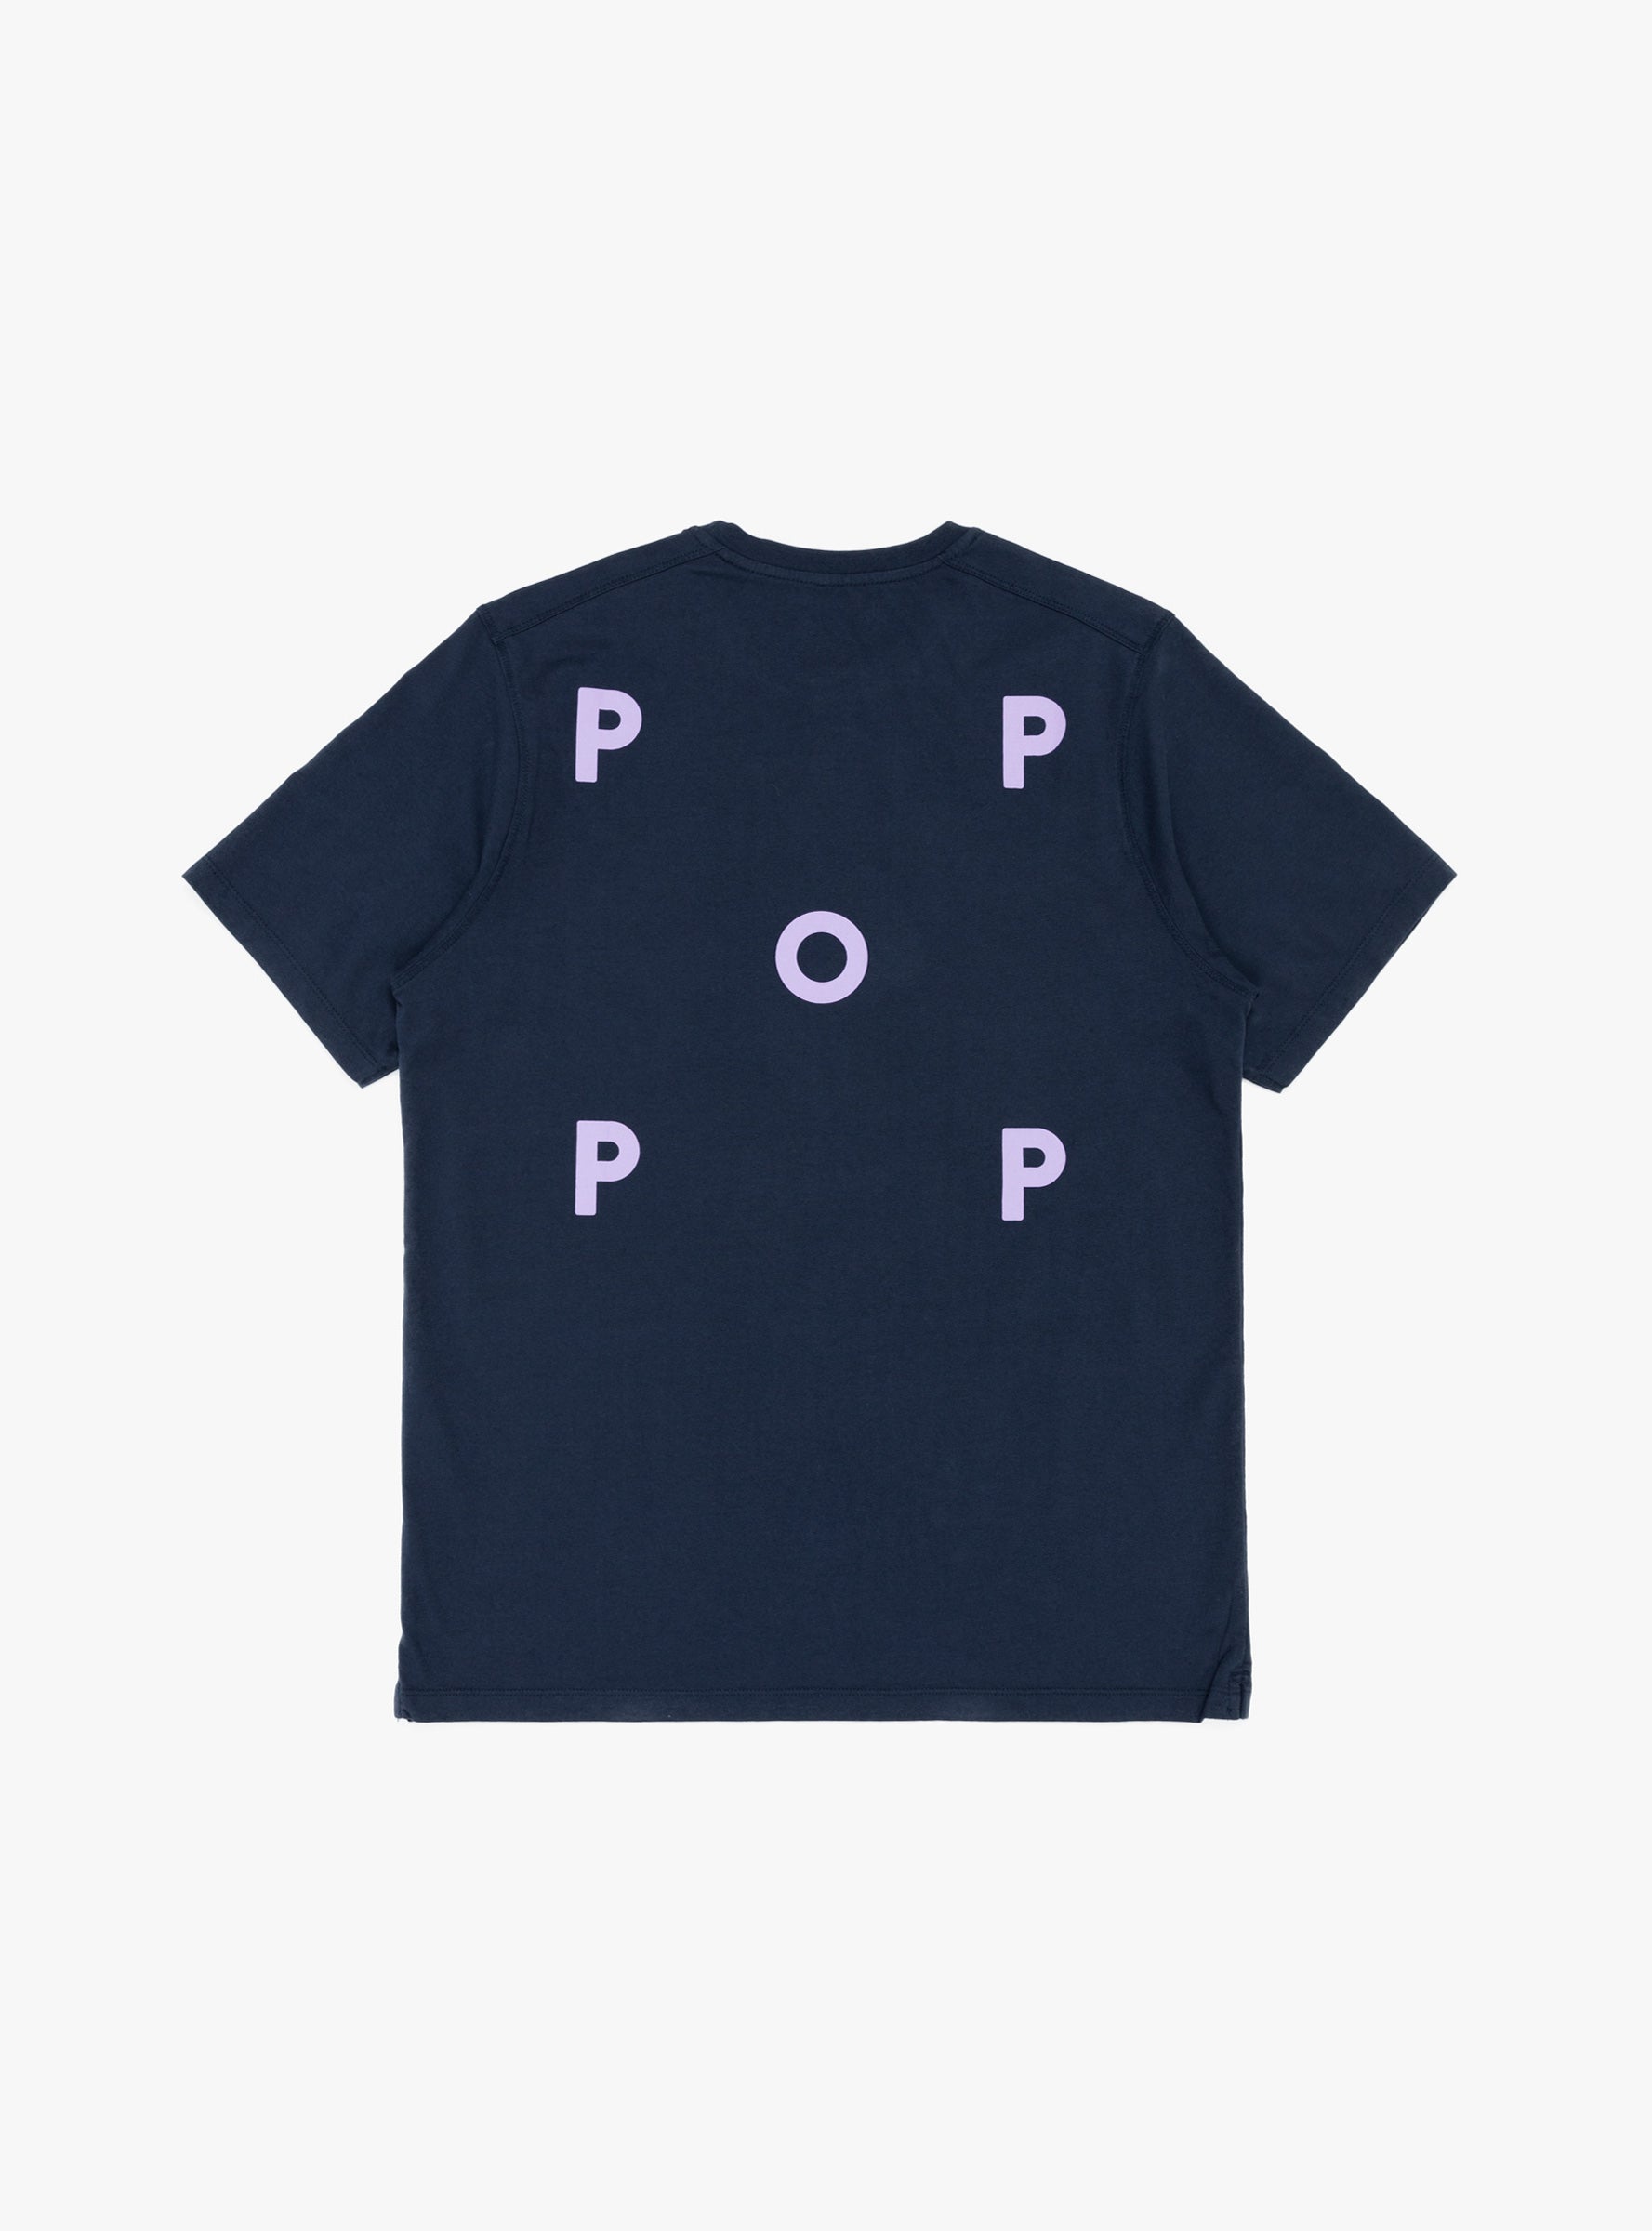 Pop Trading Company Pop Trading Company Logo T-shirt Navy & Viola - Size: Small